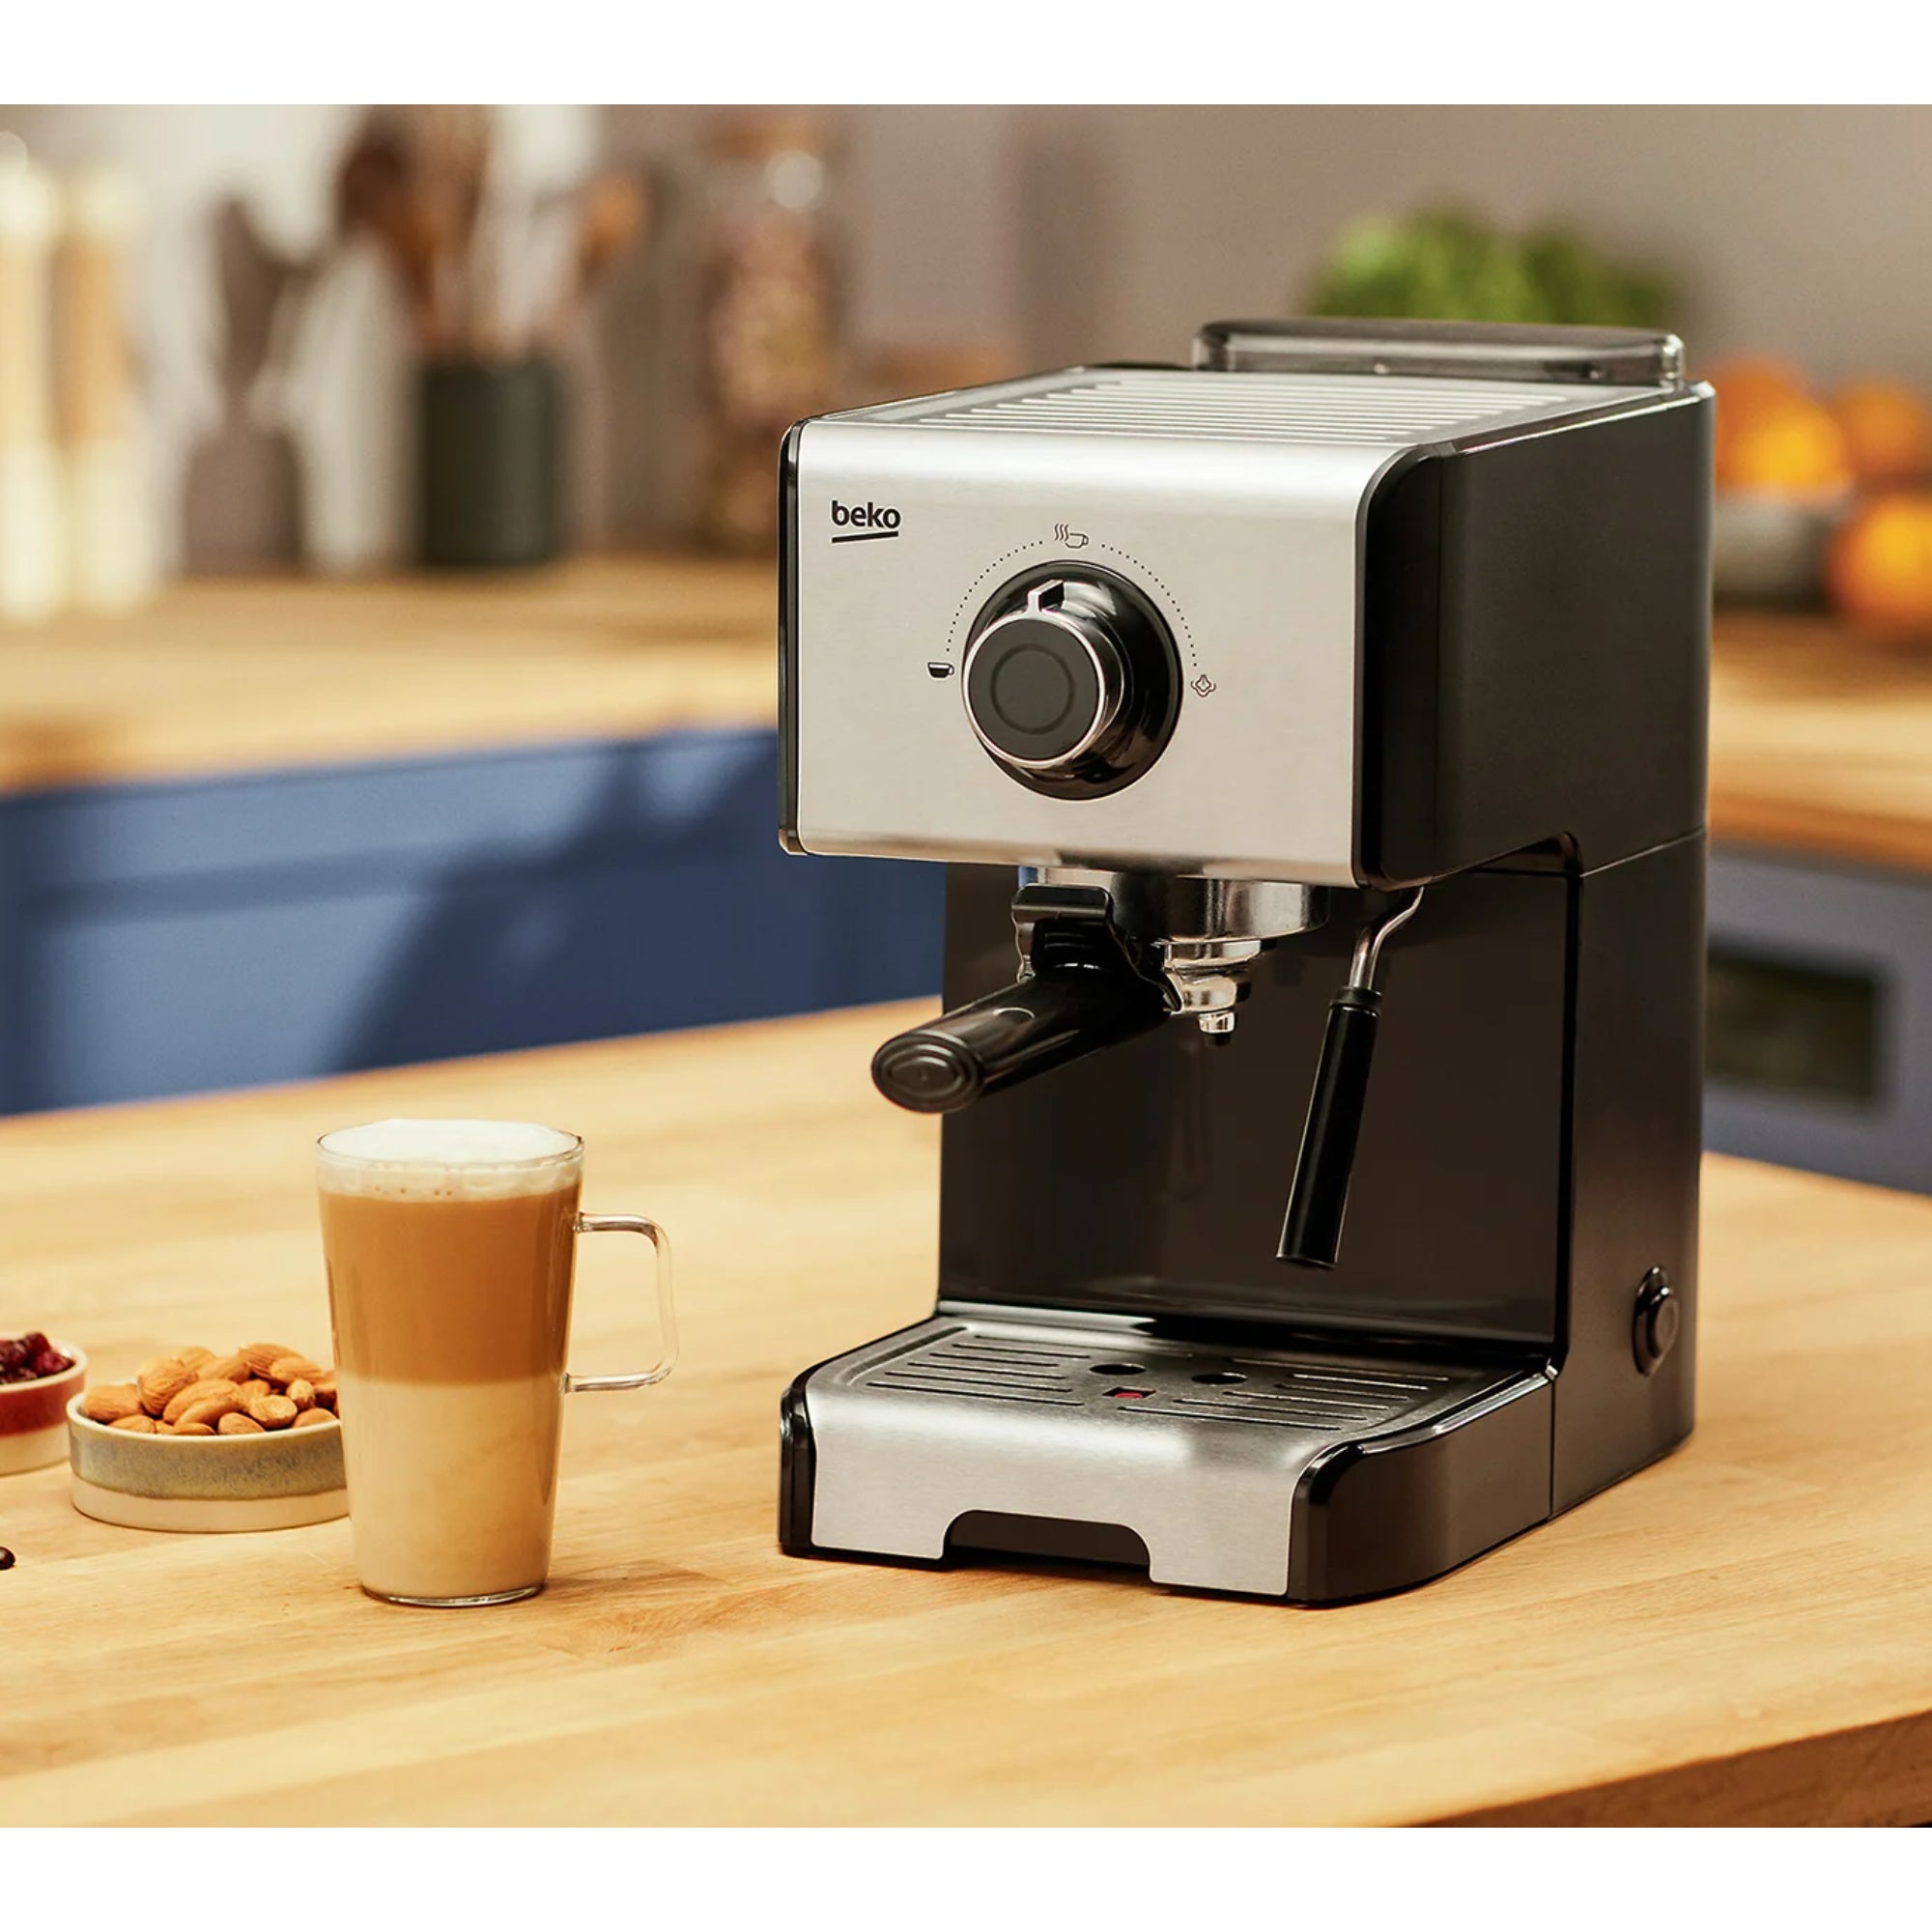 Image of Beko Barista Espresso Coffee Machine Silver